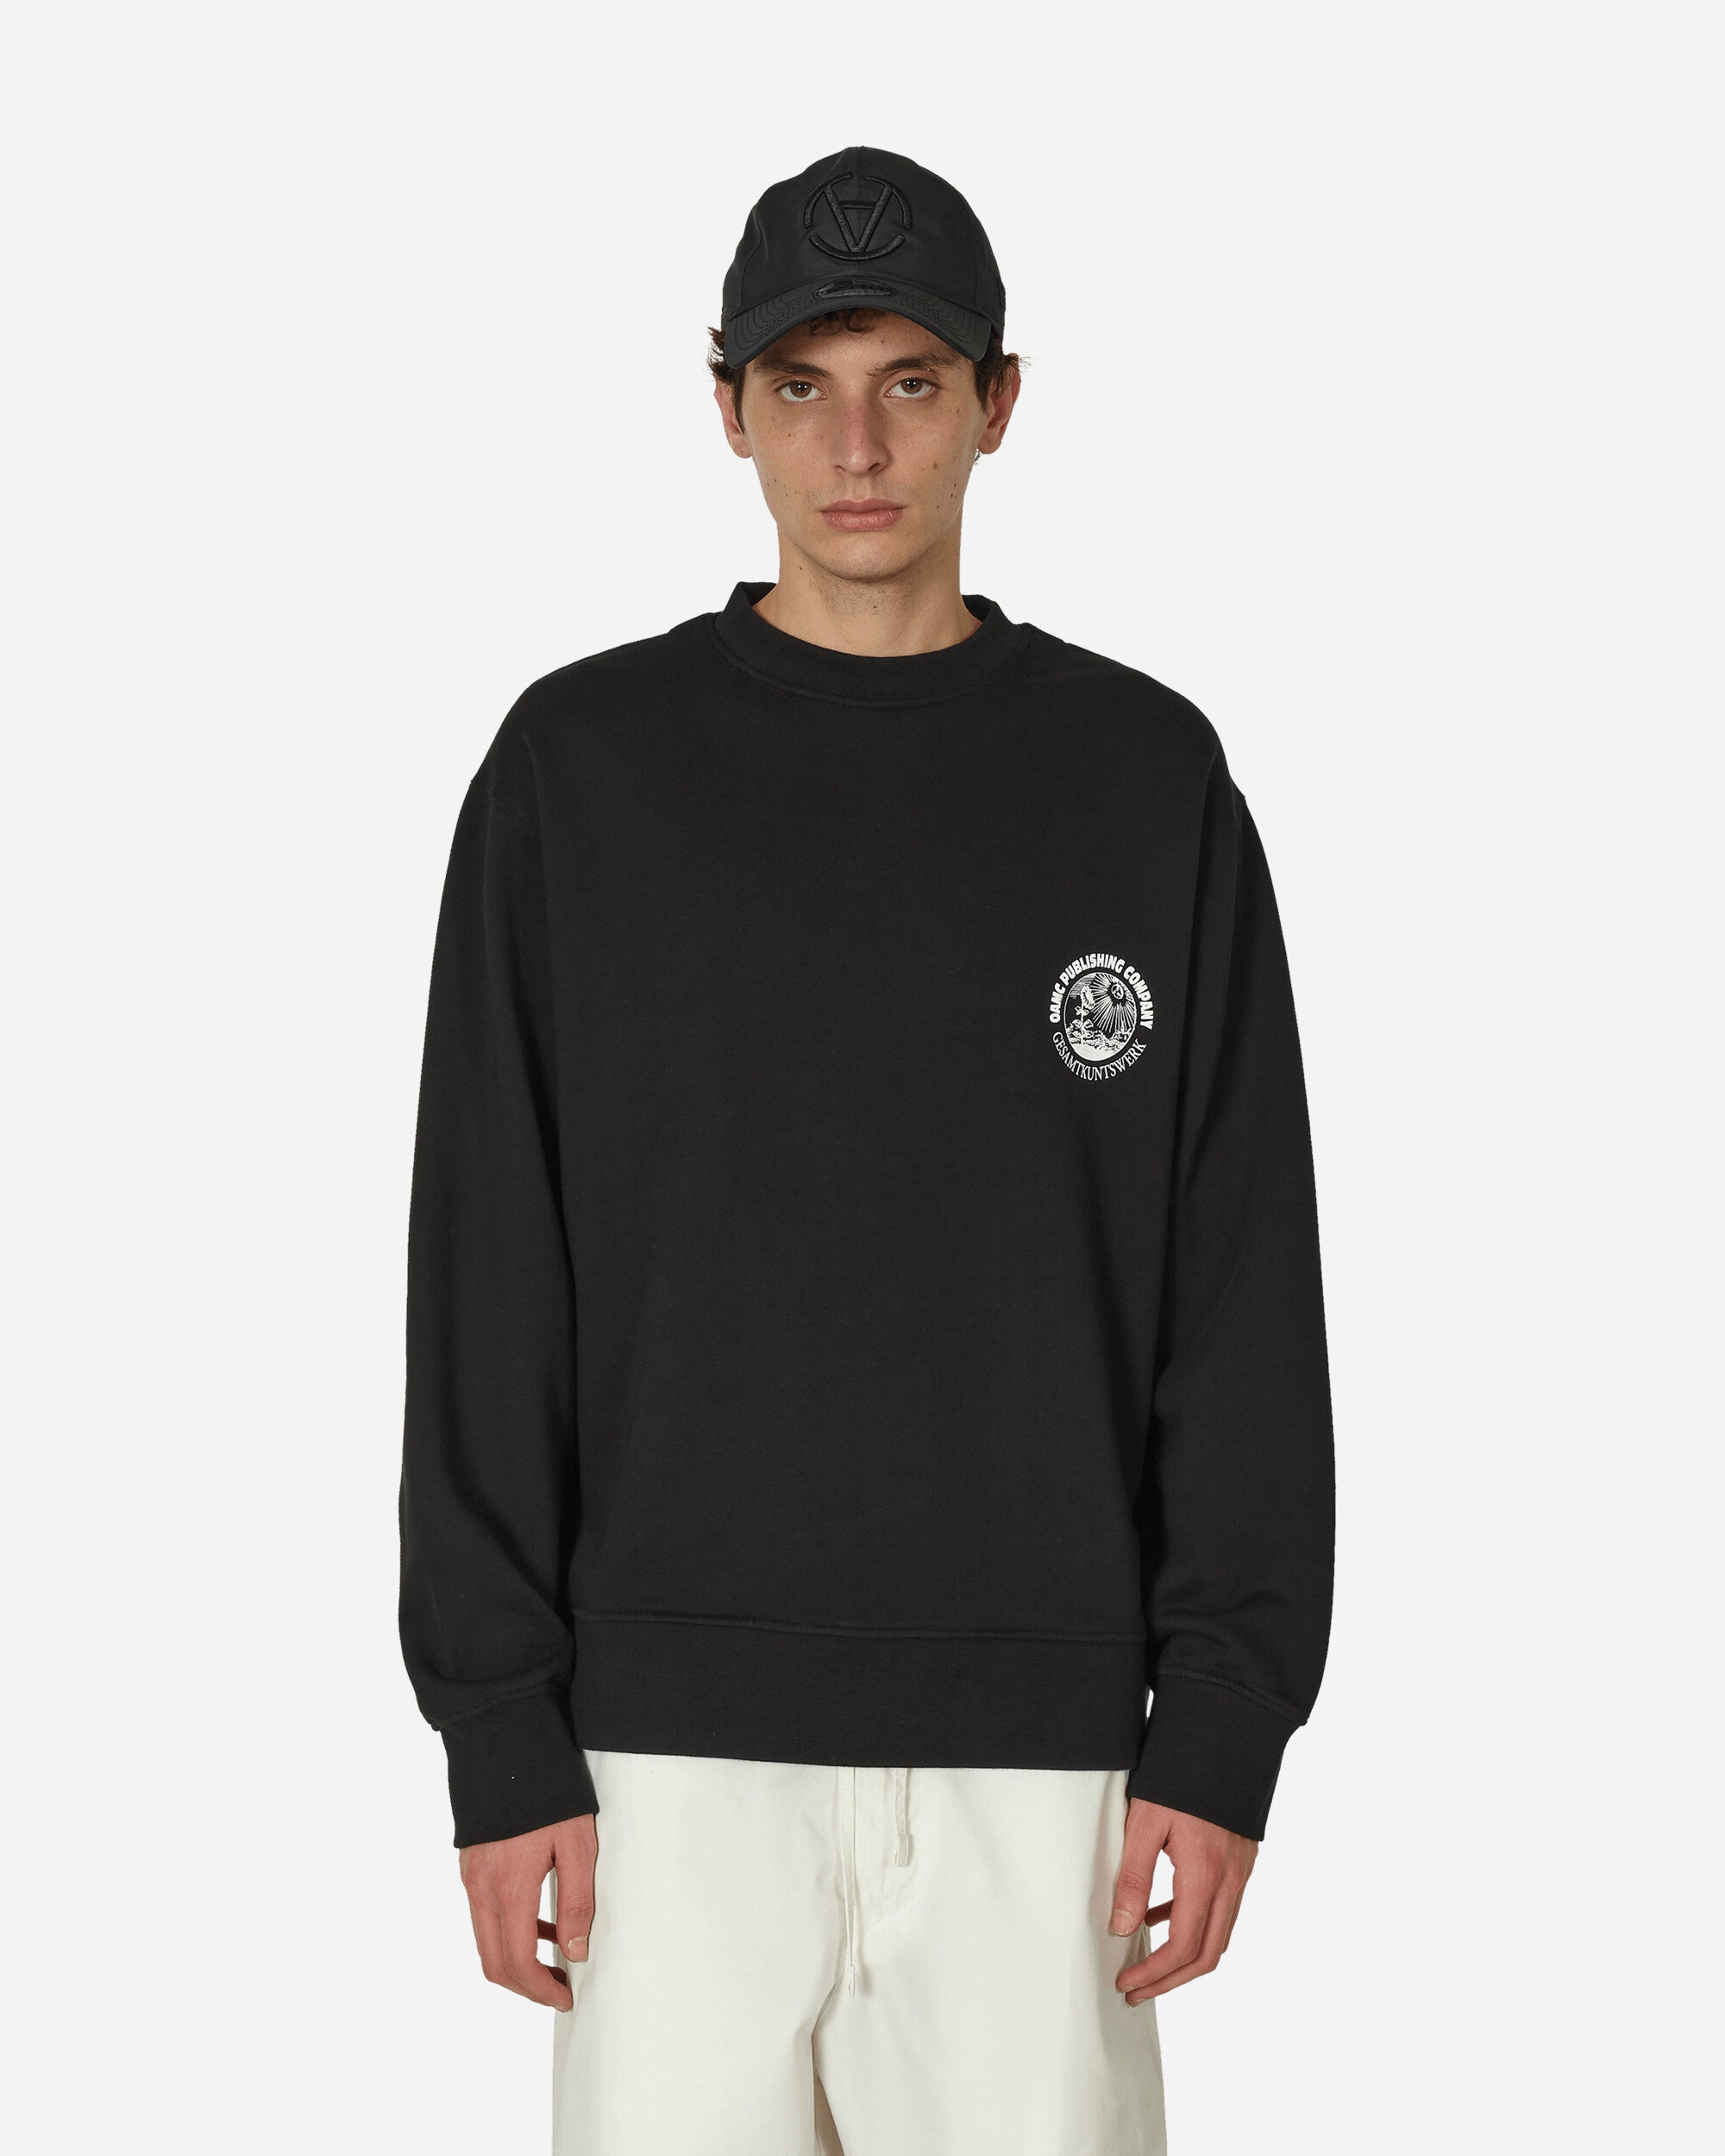 Apollo Crewneck Sweatshirt Black